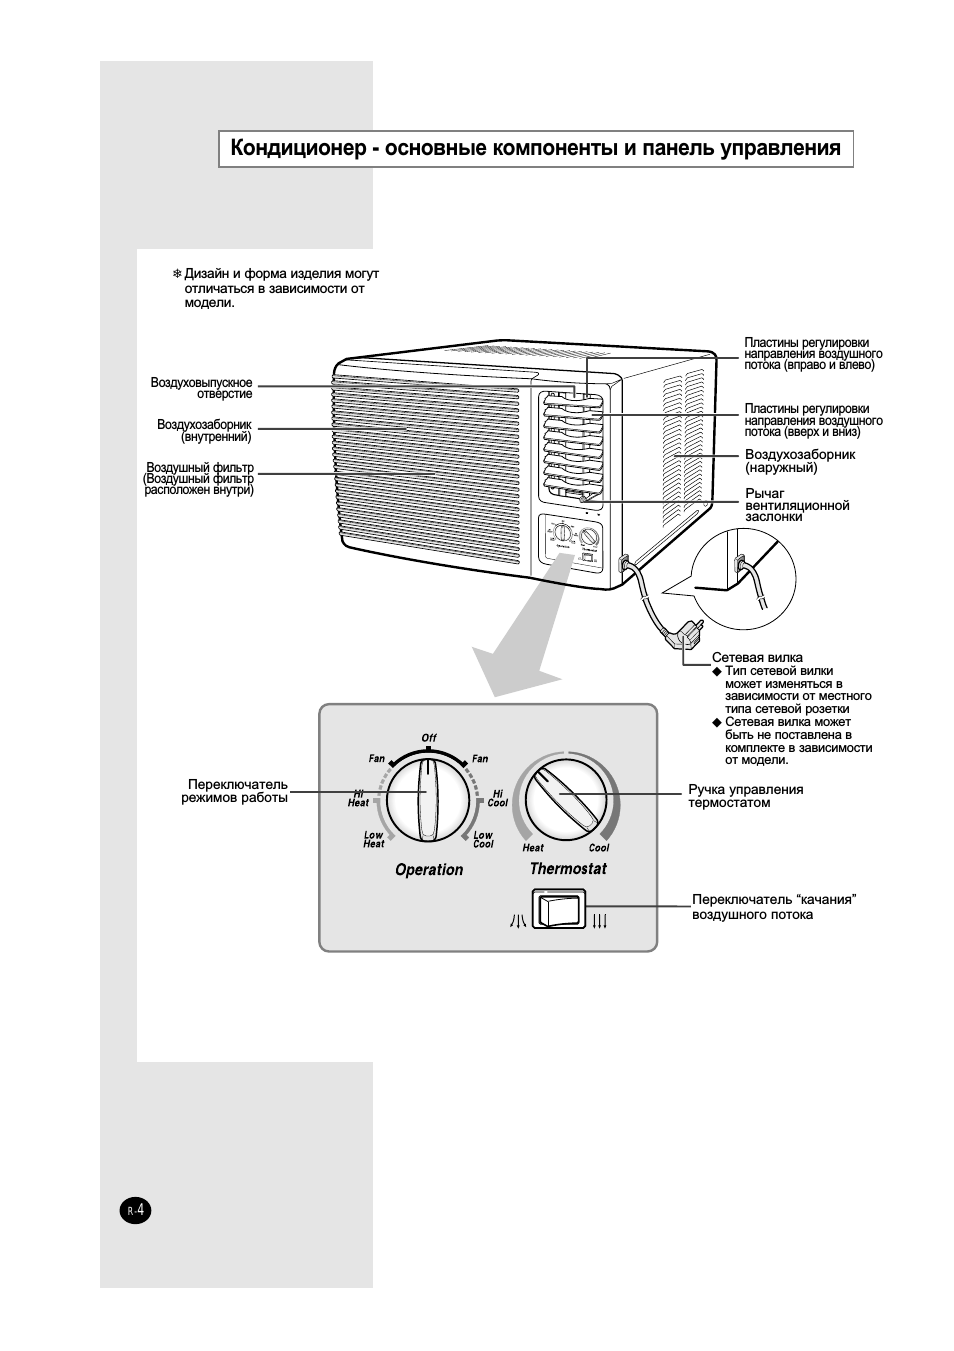 Инструкция по использованию пульта от кондиционера и описание функций